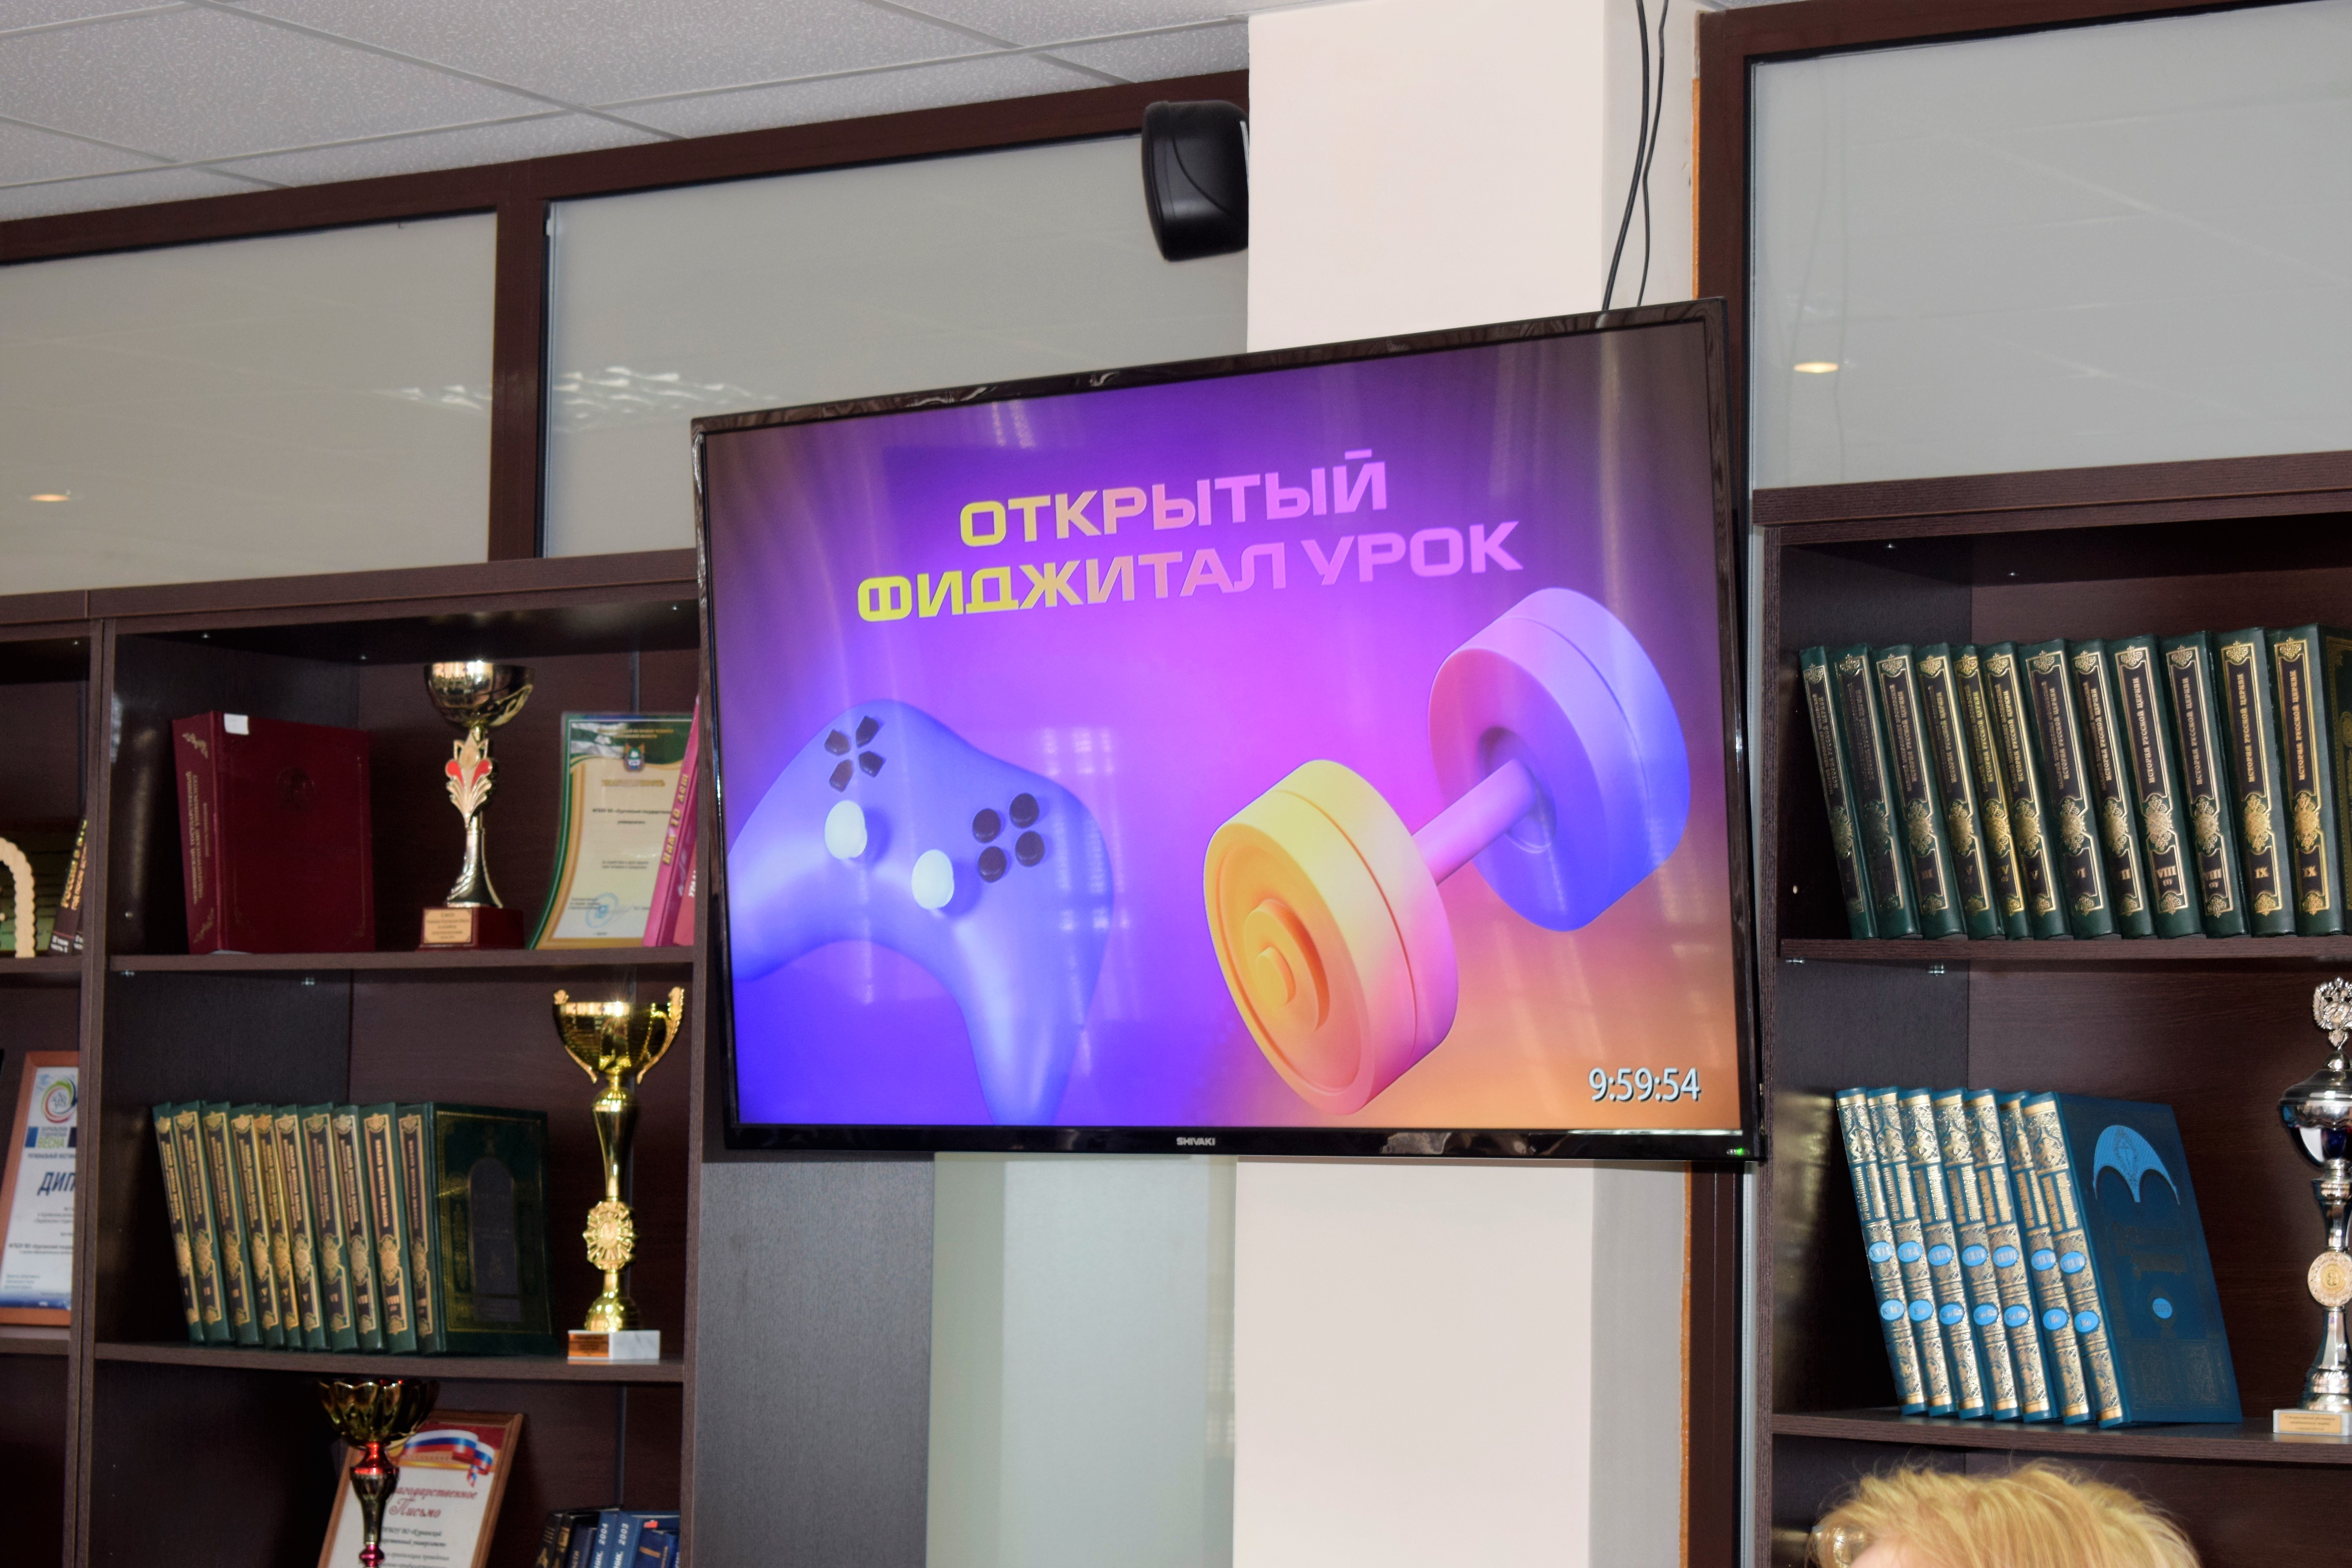 Студенты КГУ побывали на Всероссийском фиджитал-уроке